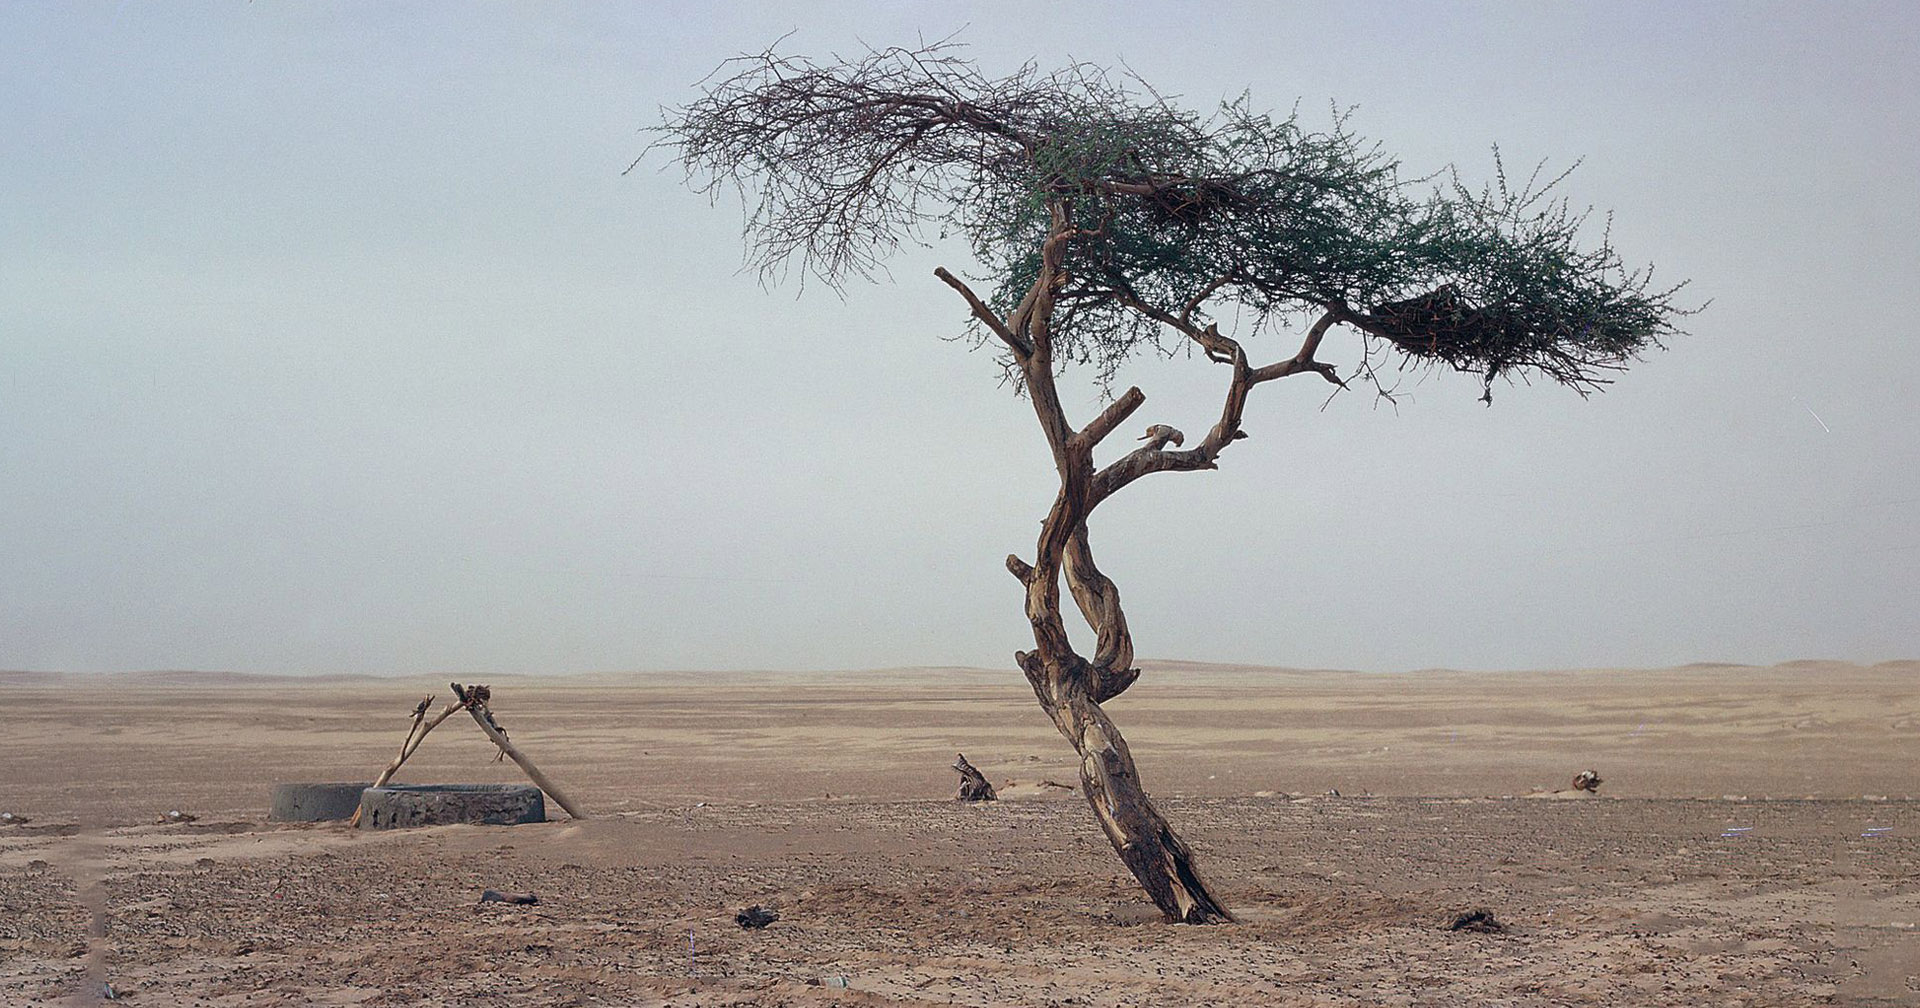 เรื่องราวของ ‘ต้นไม้โดดเดี่ยวแห่งทะเลทรายซาฮารา’ อายุ 300 ปี ที่ตายลงเพราะ “เมาแล้วขับ”